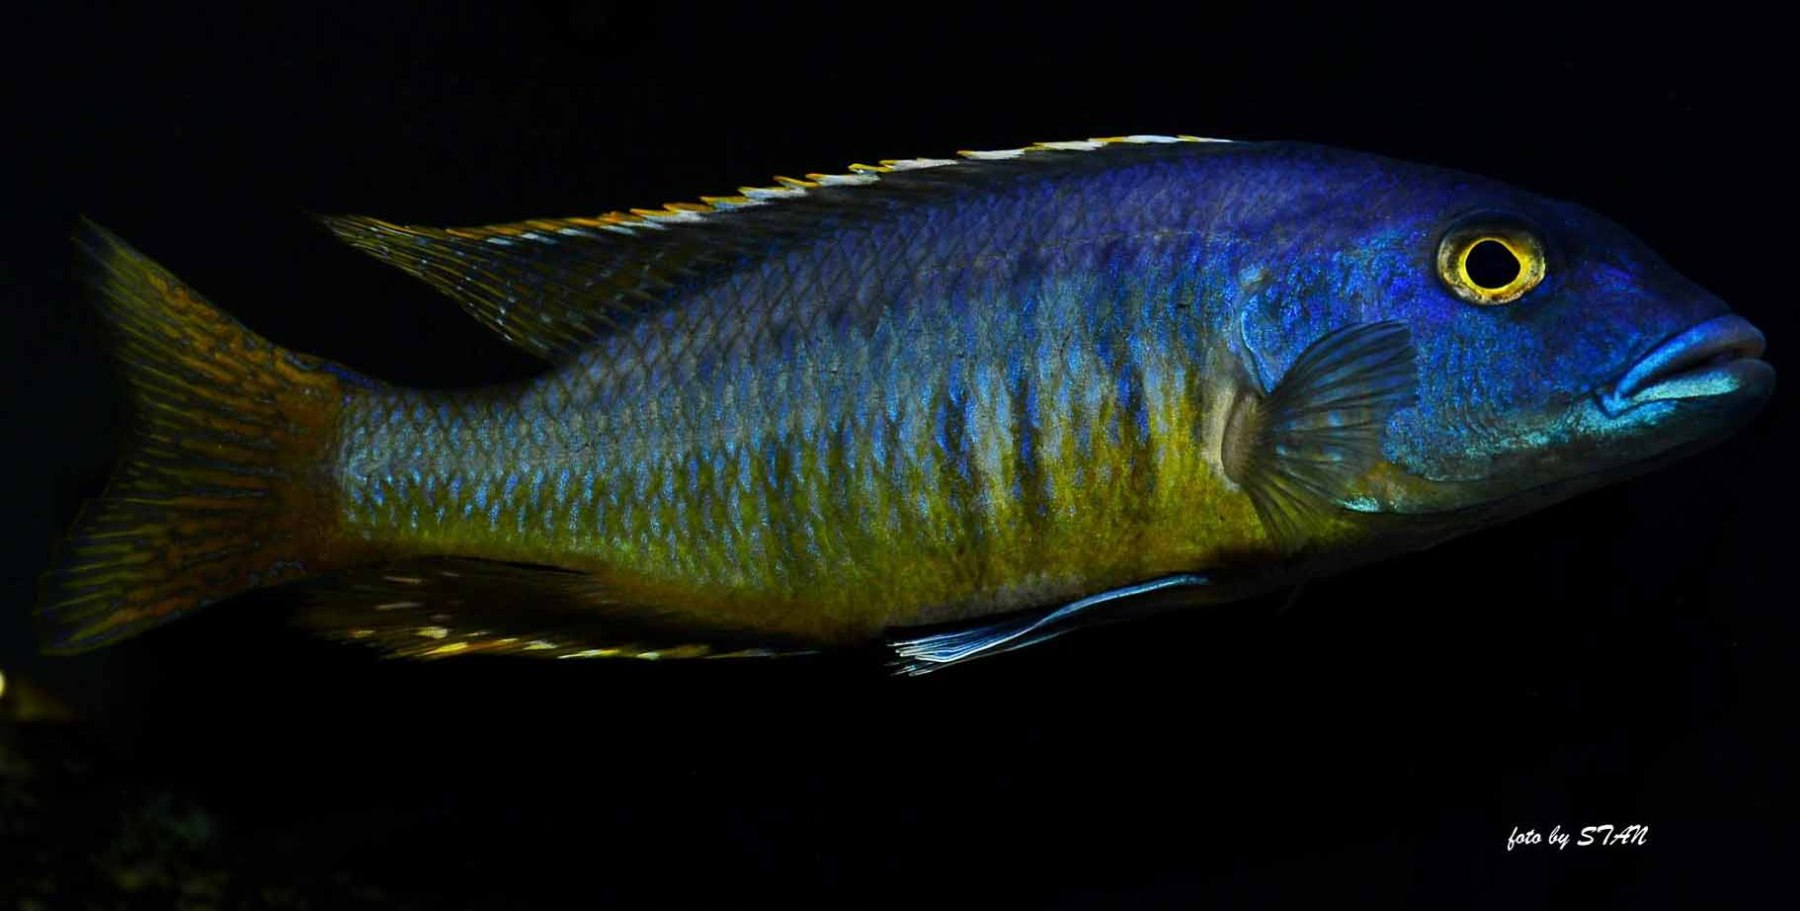 Taeniochromis-holotaenia-4